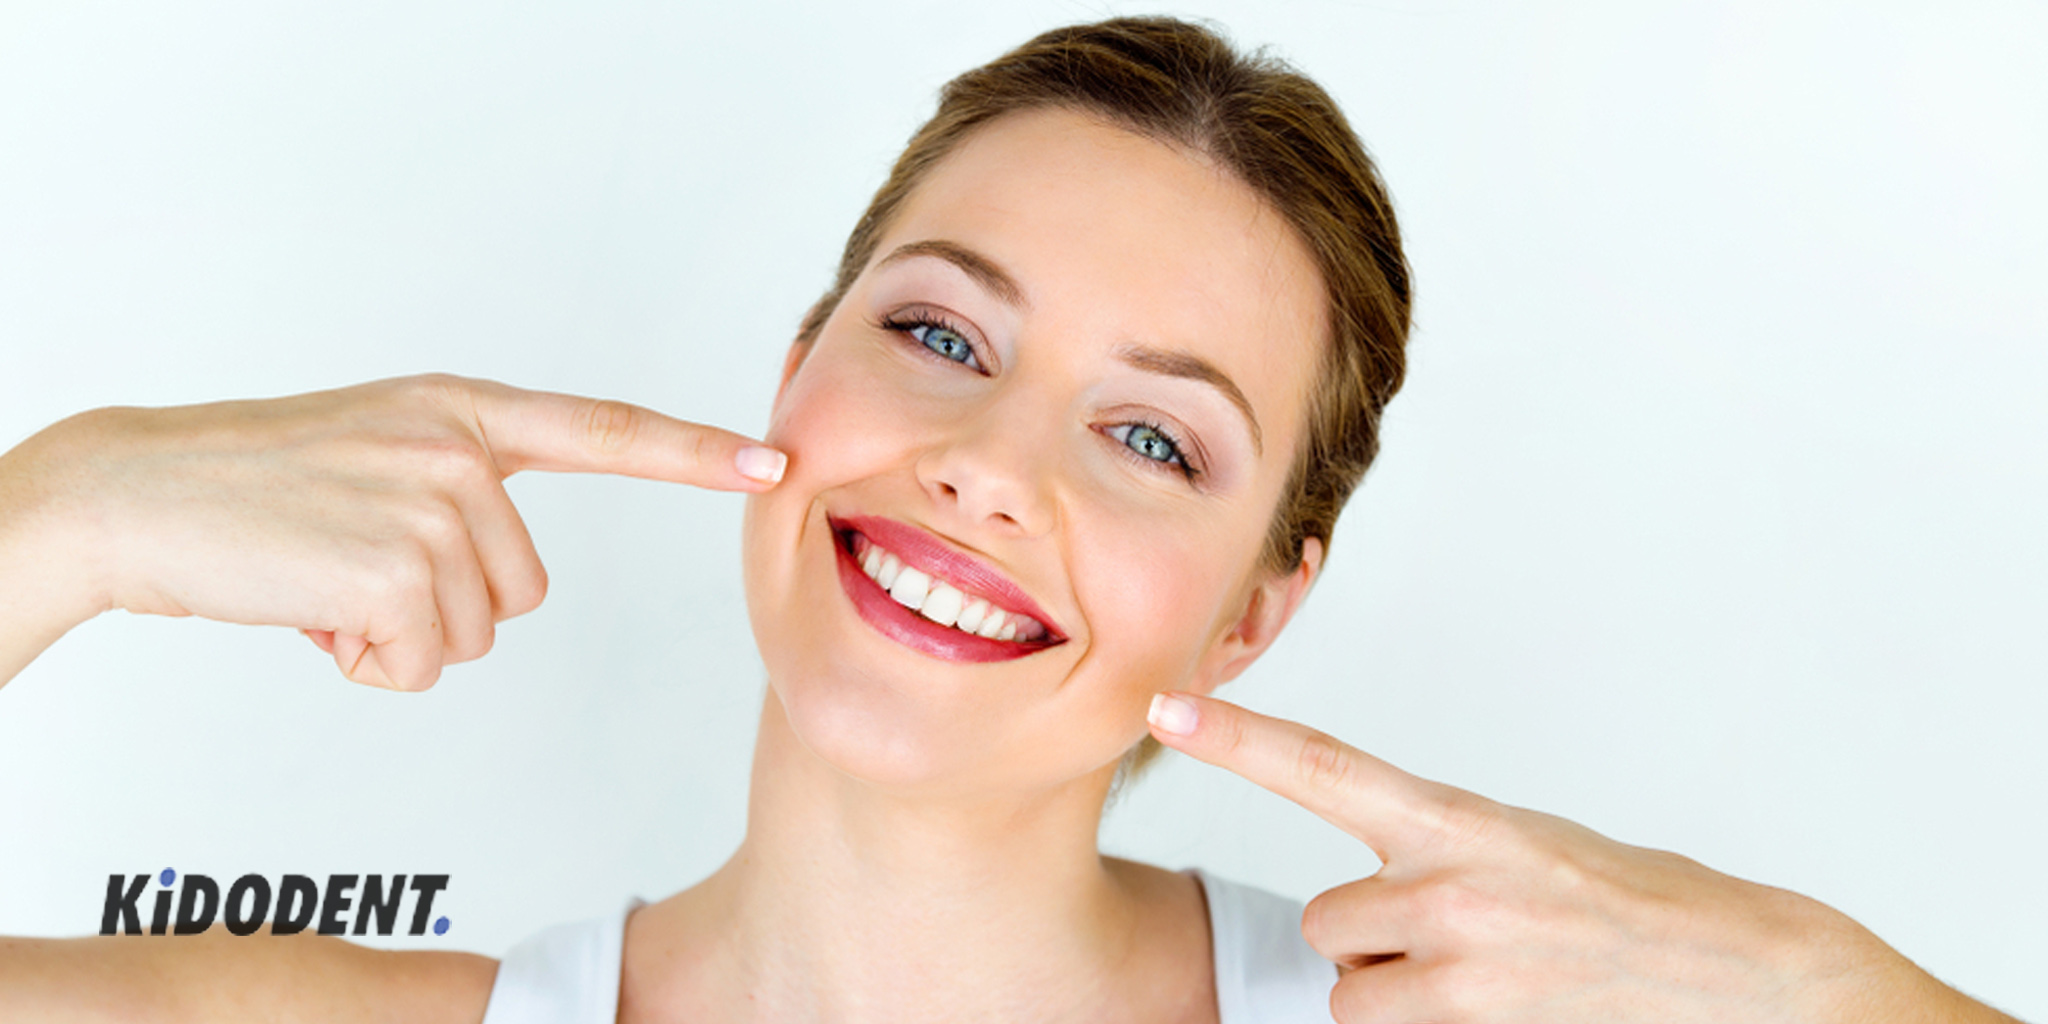 چگونه دندان های خود را سفید کنیم؟  5 درمان خانگی- kidodent